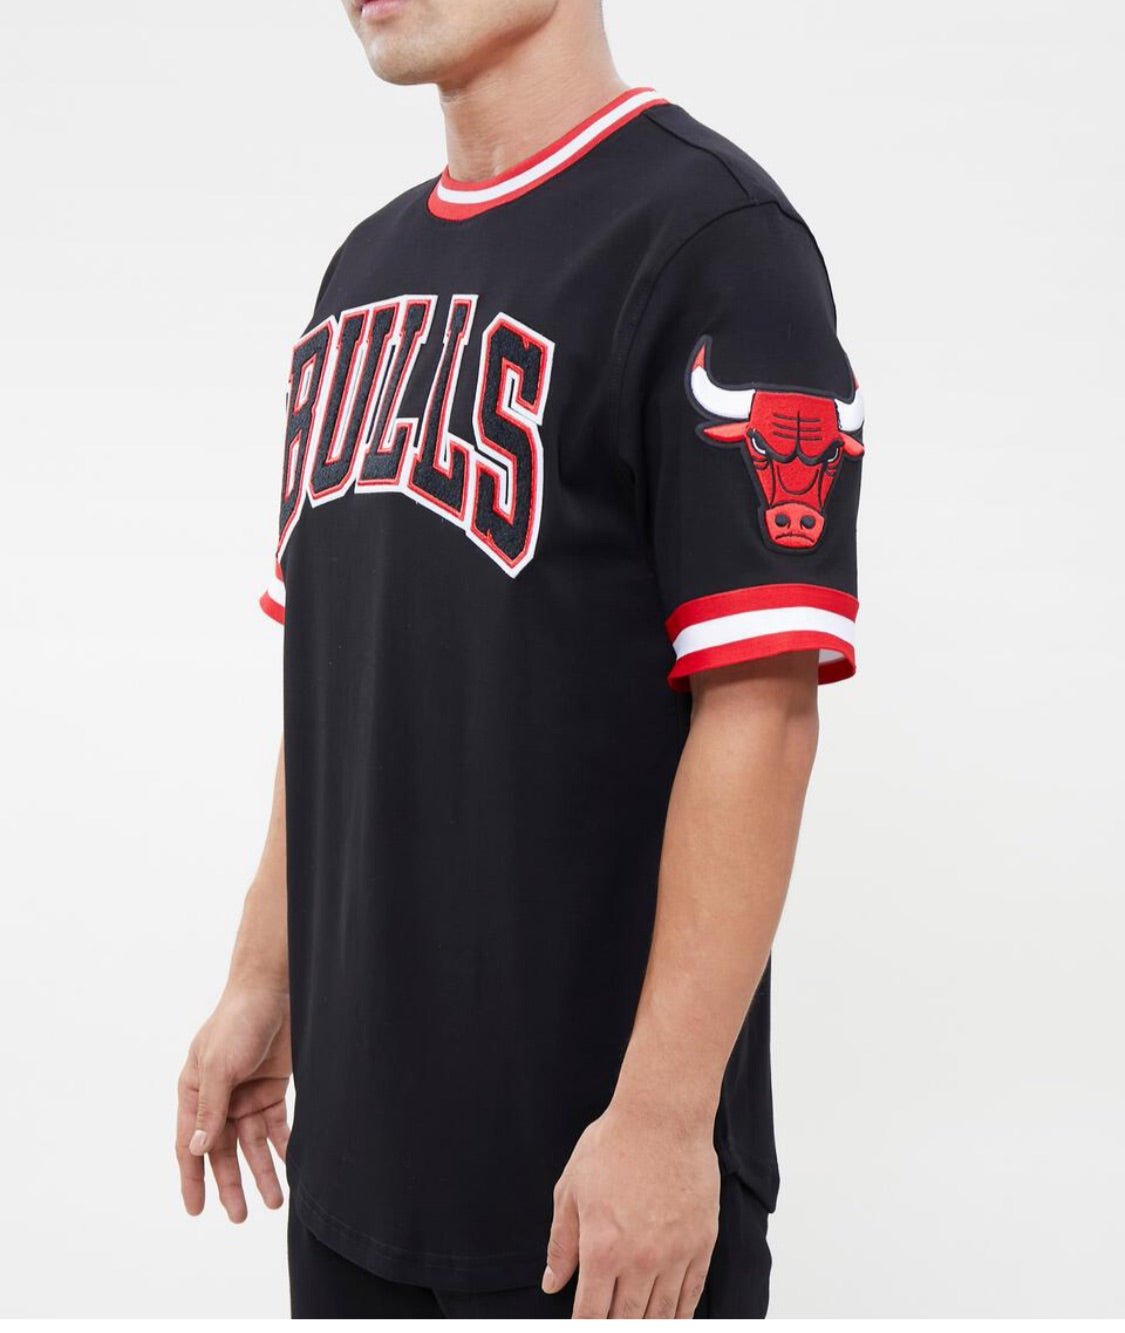 Pro Standard Men’s Chicago Bulls Jersey Tee Shirt